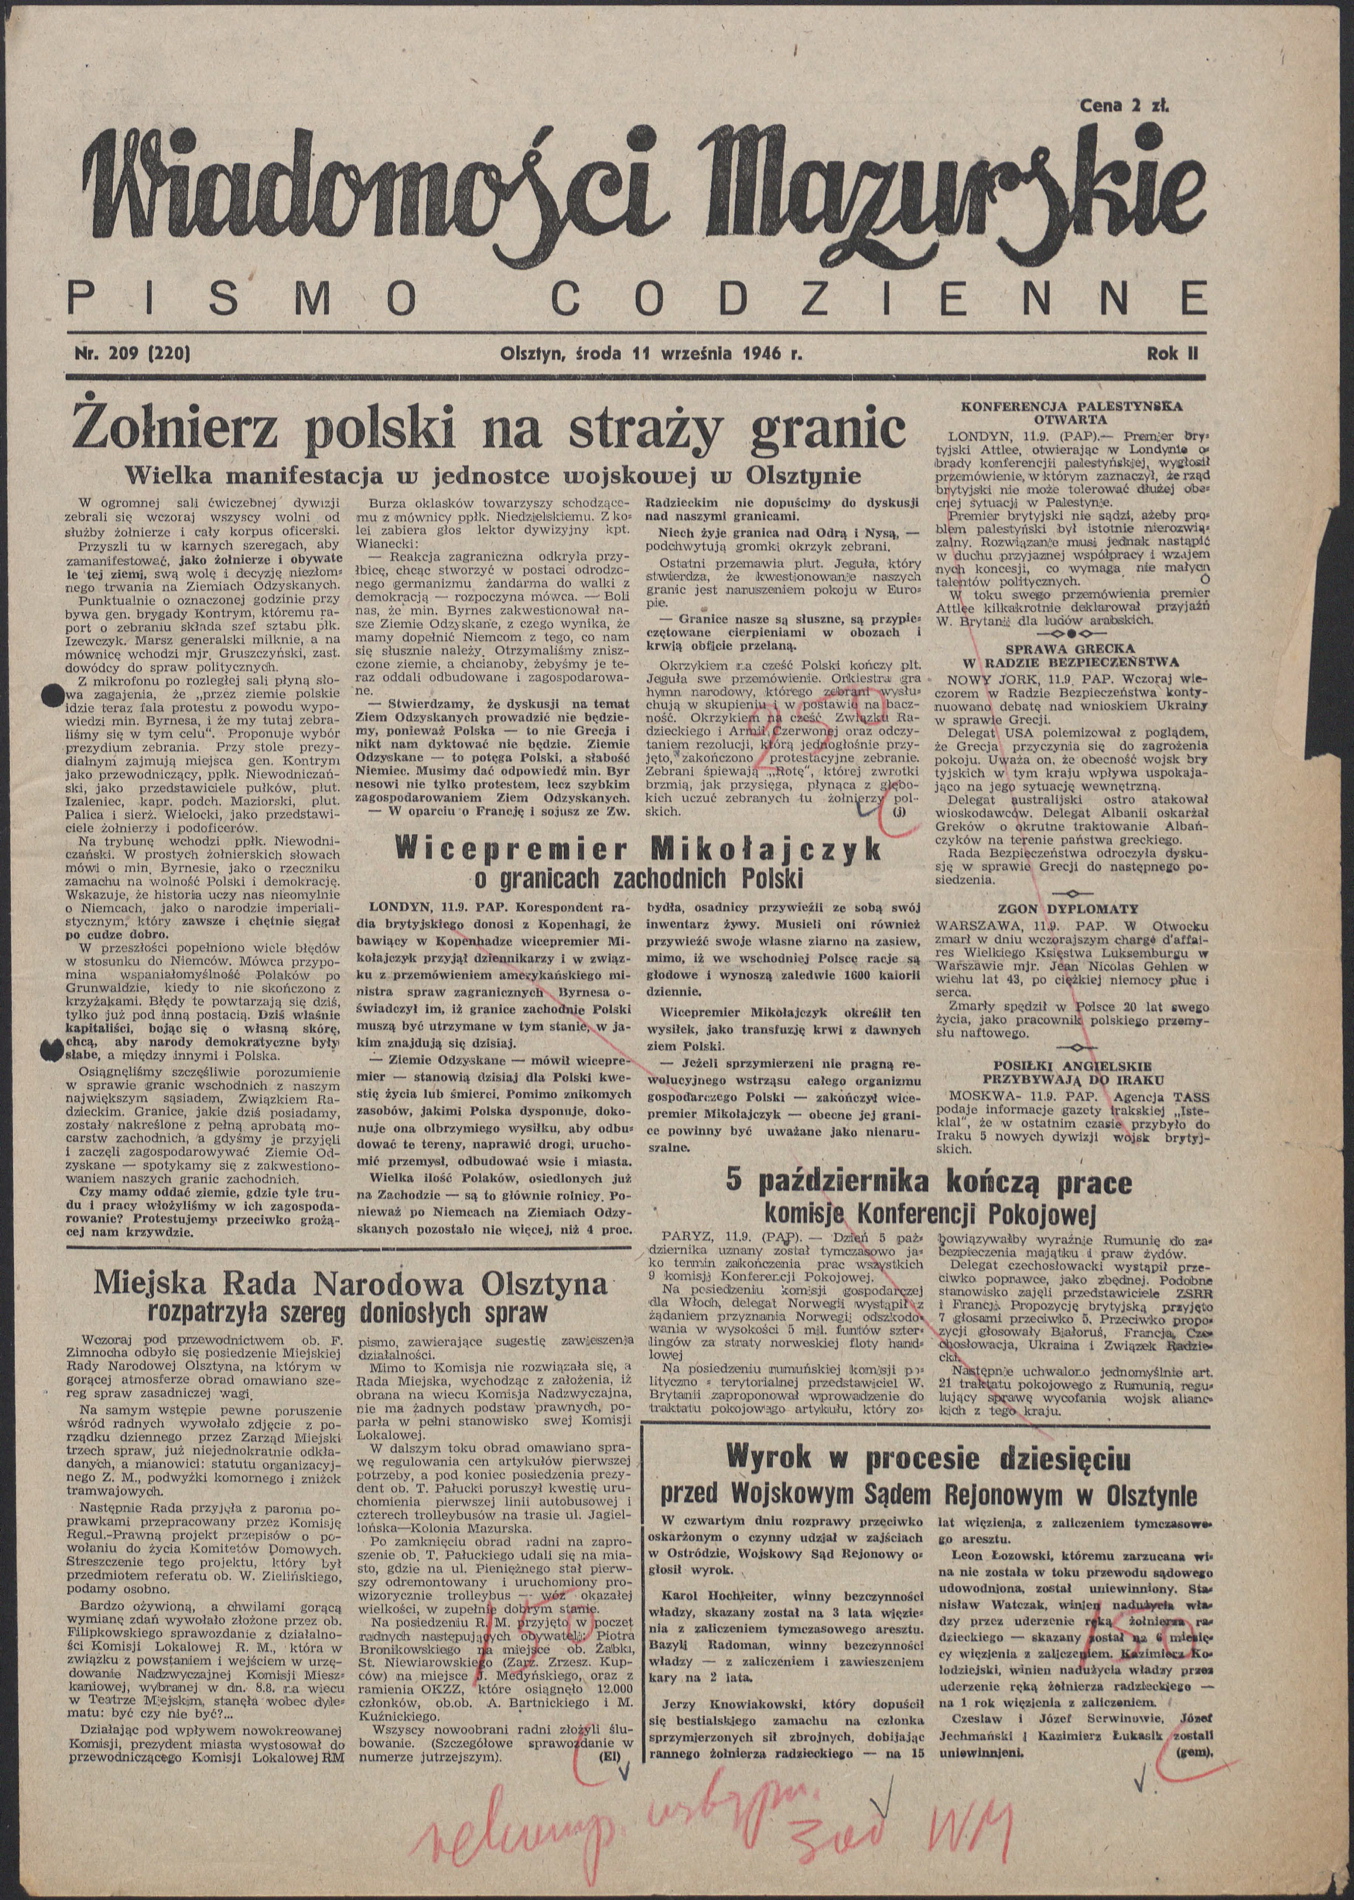 Proces przed Wojskowym Sądem Rejonowym w Olsztynie ze szczegółami opisywała lokalna prasa.